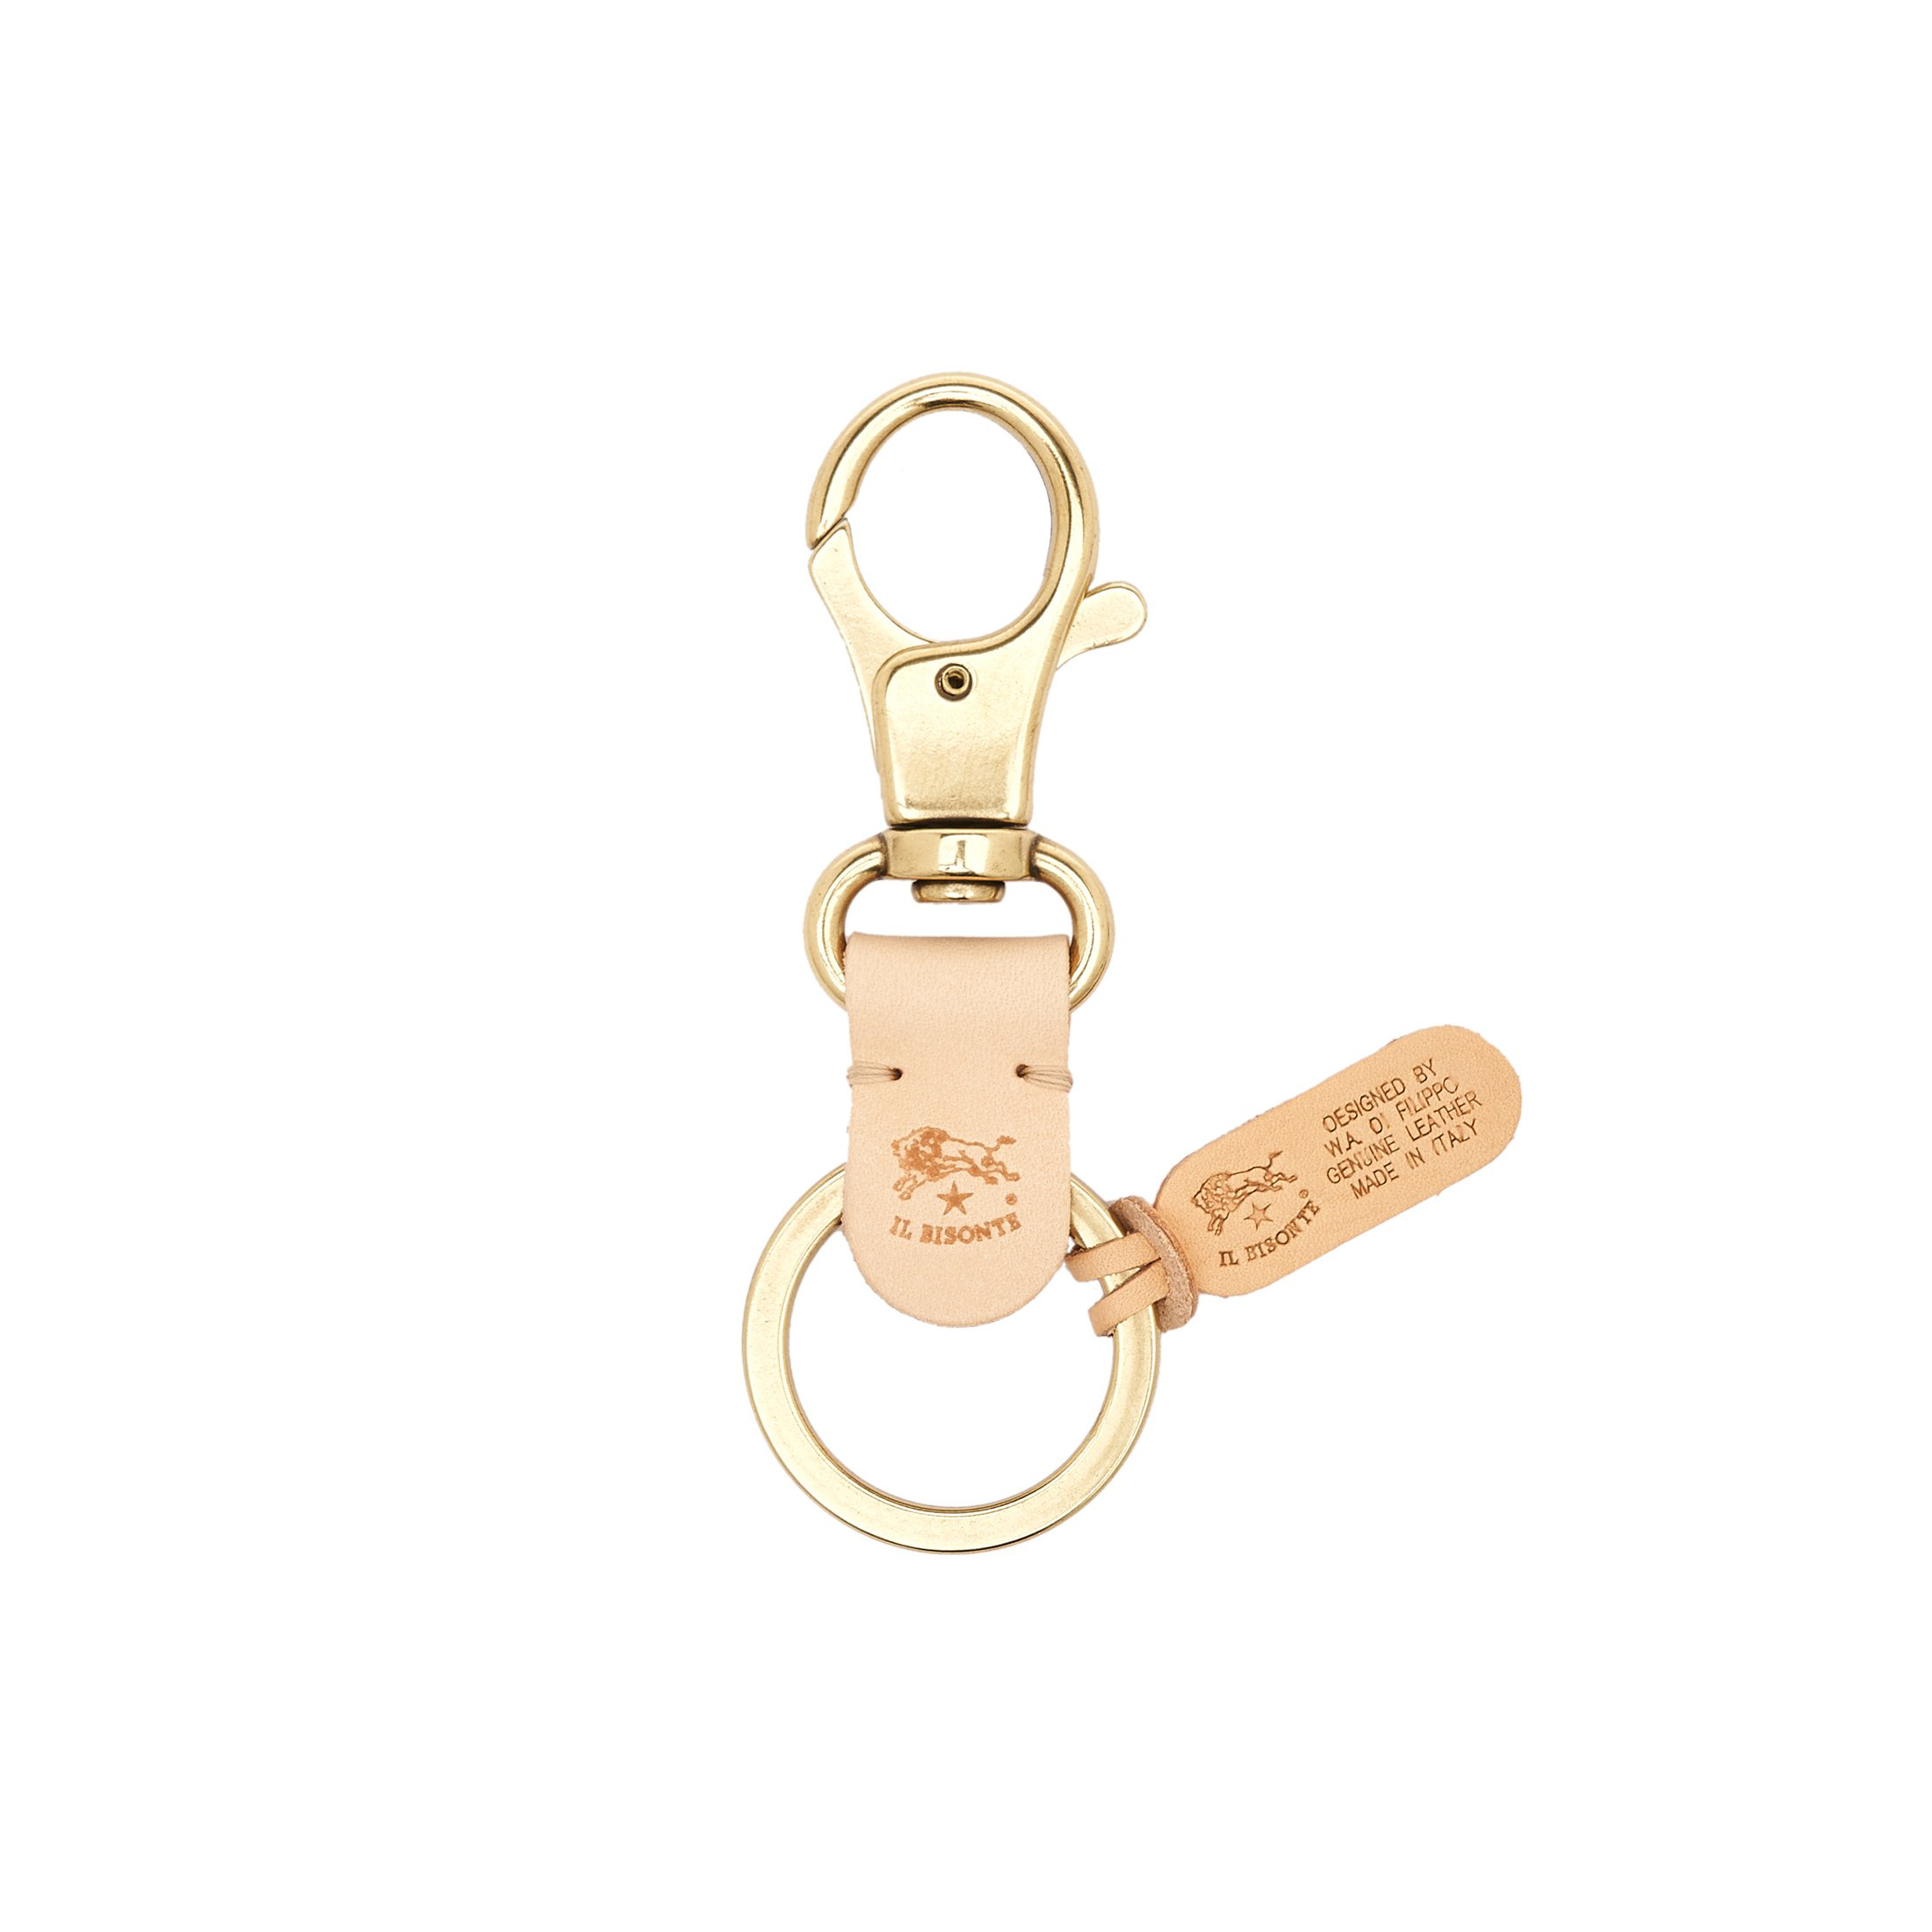 Louis Vuitton 101 Champs-Elysees Maison Bag Charm - Gold Keychains